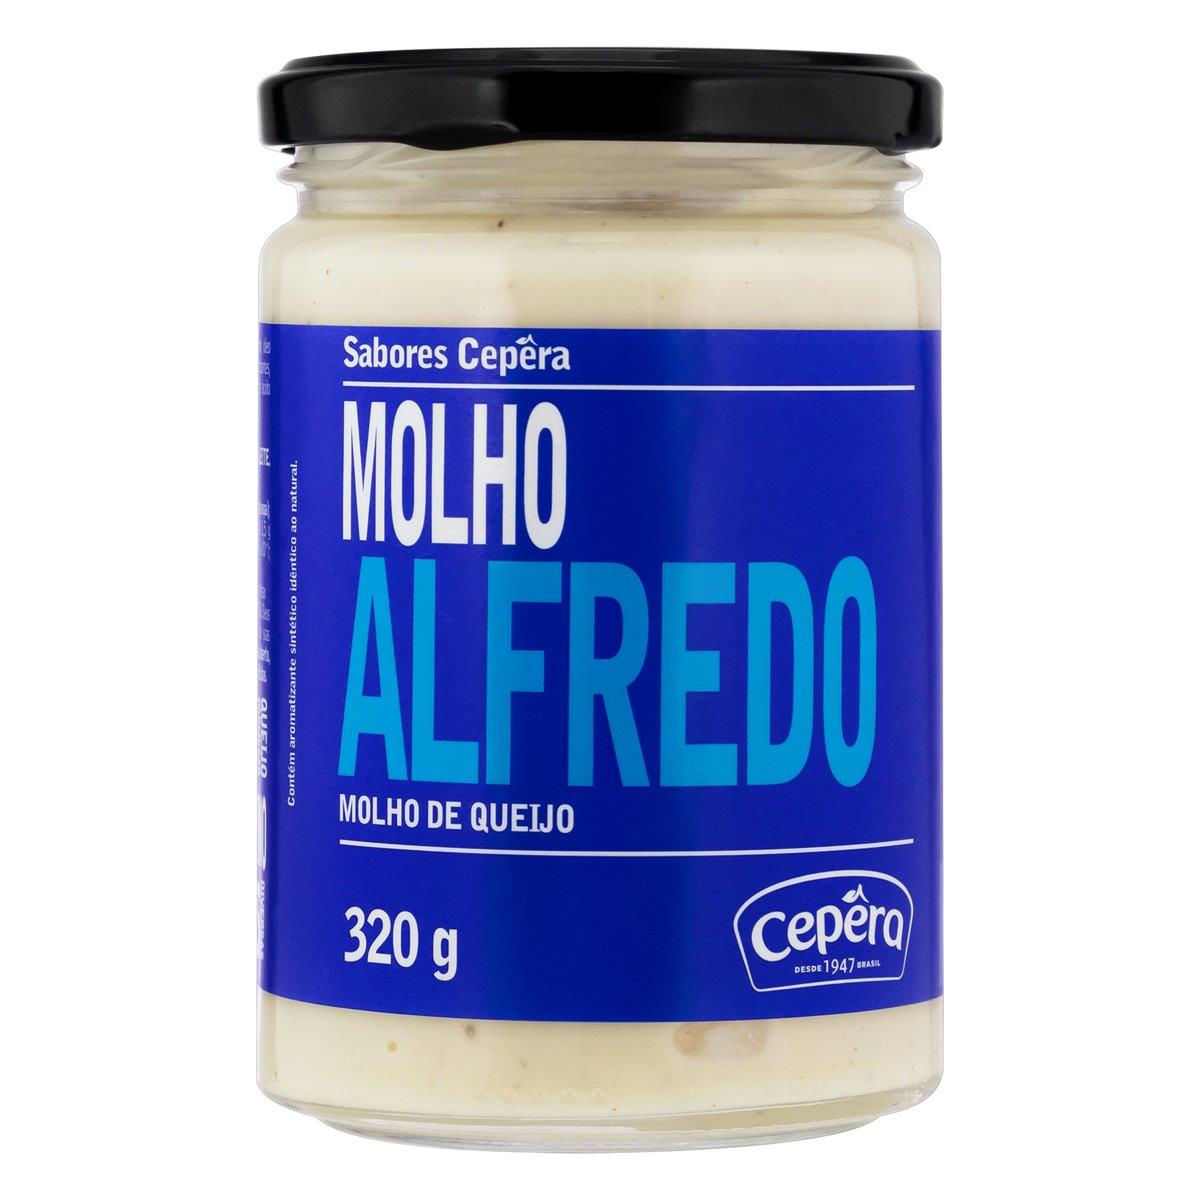 MOLHO ALFREDO DE QUEIJO CEPÊRA VIDRO 320G